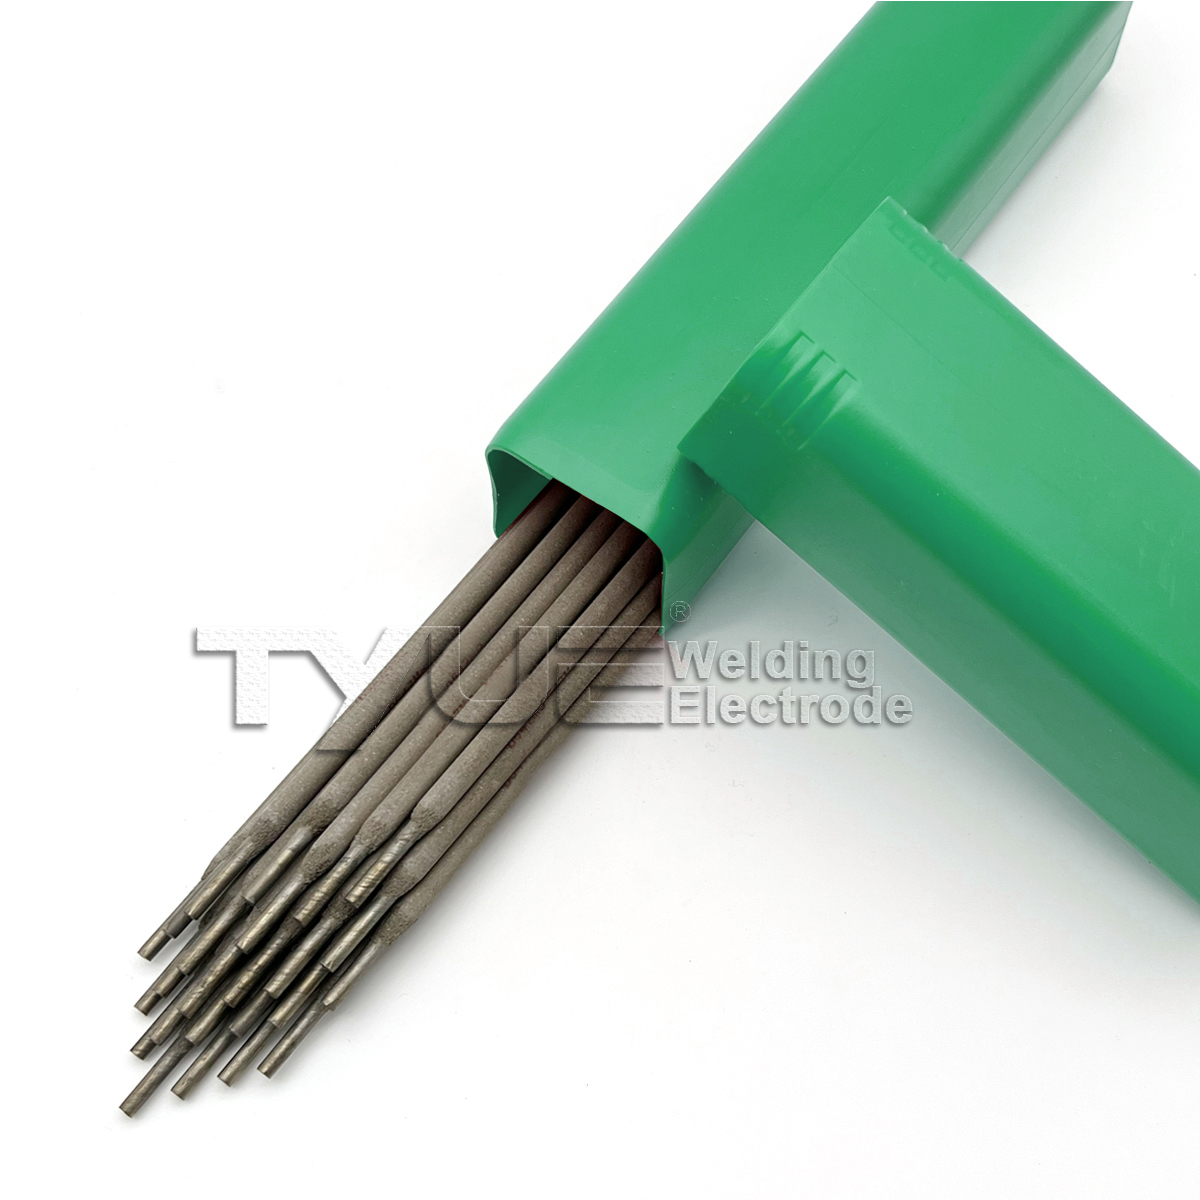 Elettrodo di saldatura per riporti duri Bacchette per saldatura di superficie DIN 8555 (E10-UM-60-GRZ) Elettrodo a bastoncino per saldatura ad arco